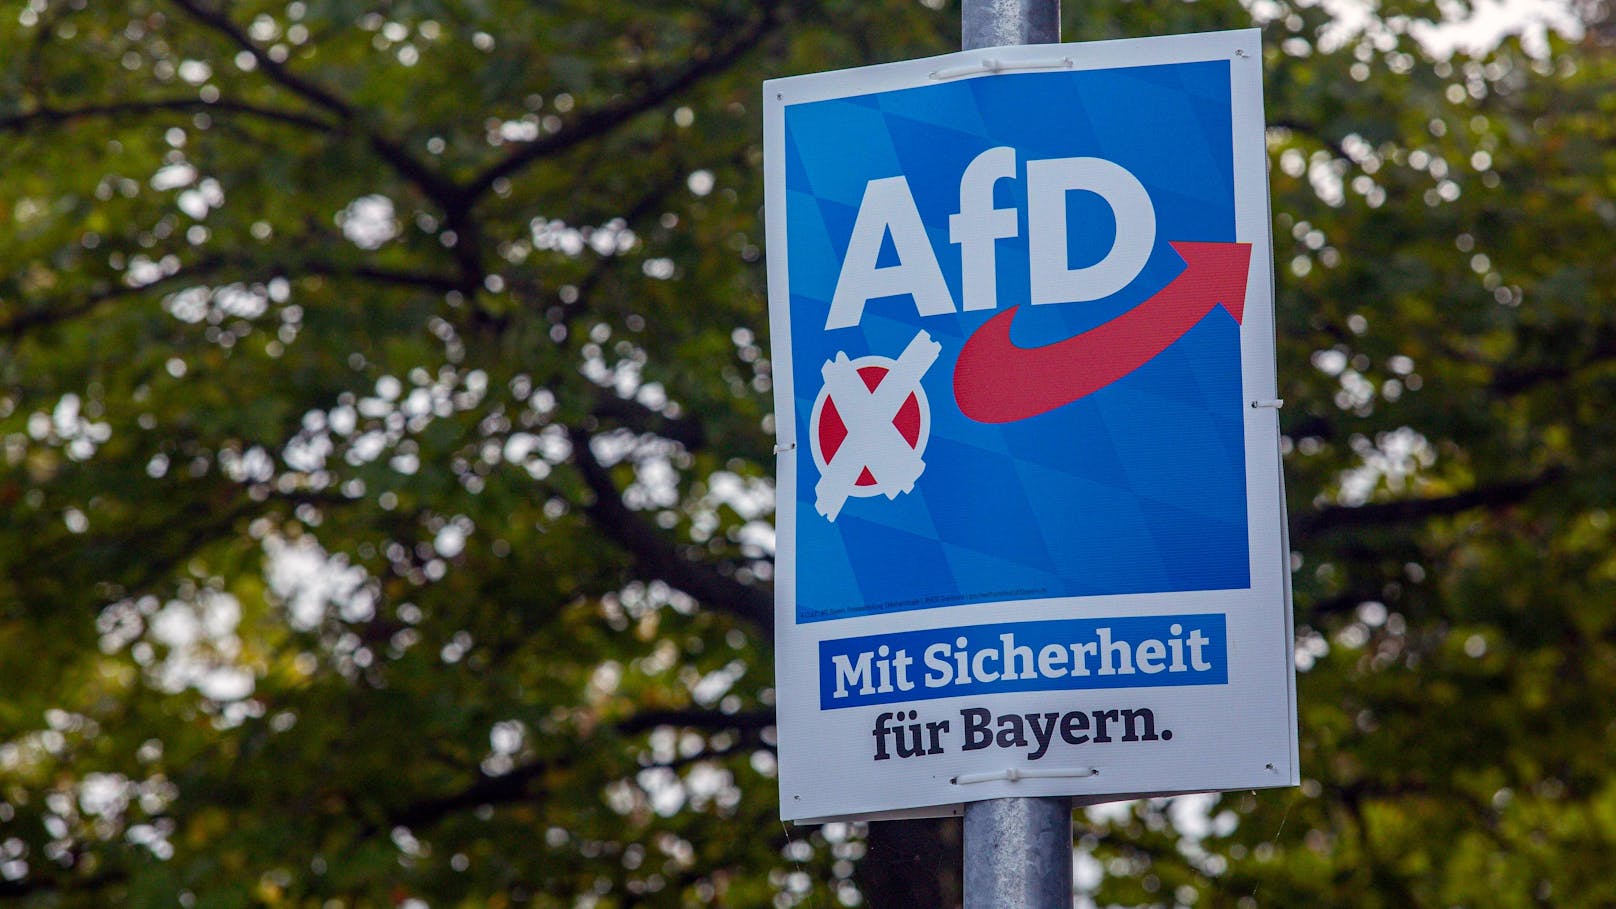 Haftbefehl gegen neu in Landtag gewählten AfD-Politiker – Welt